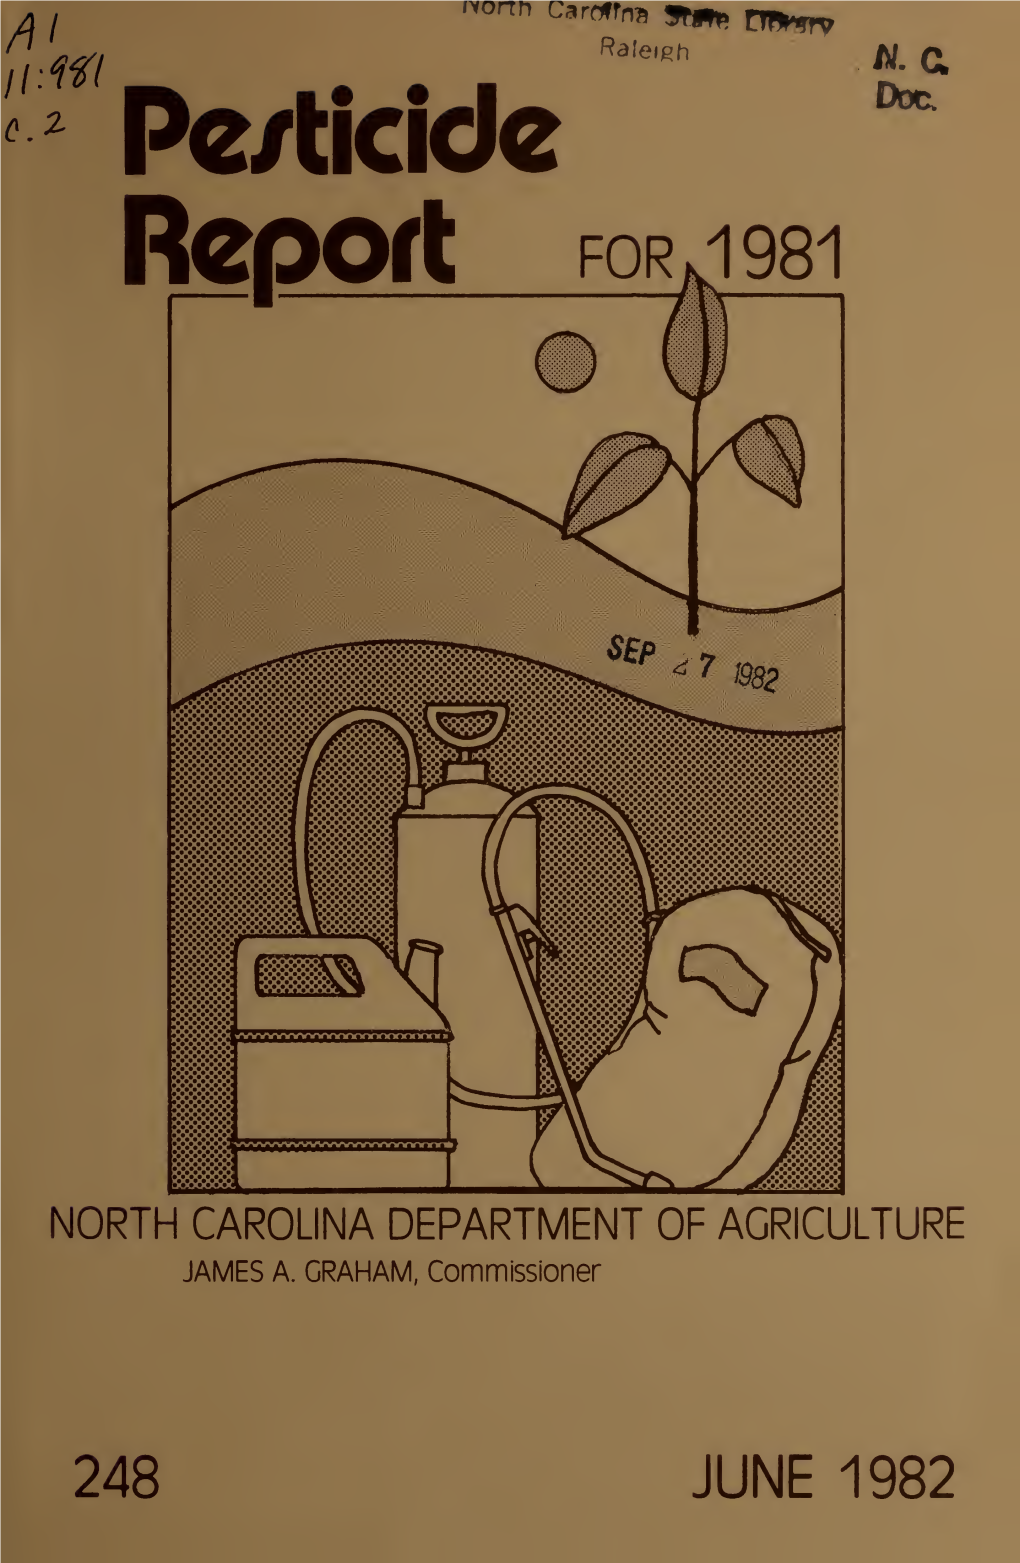 North Carolina Pesticide Report for 1981